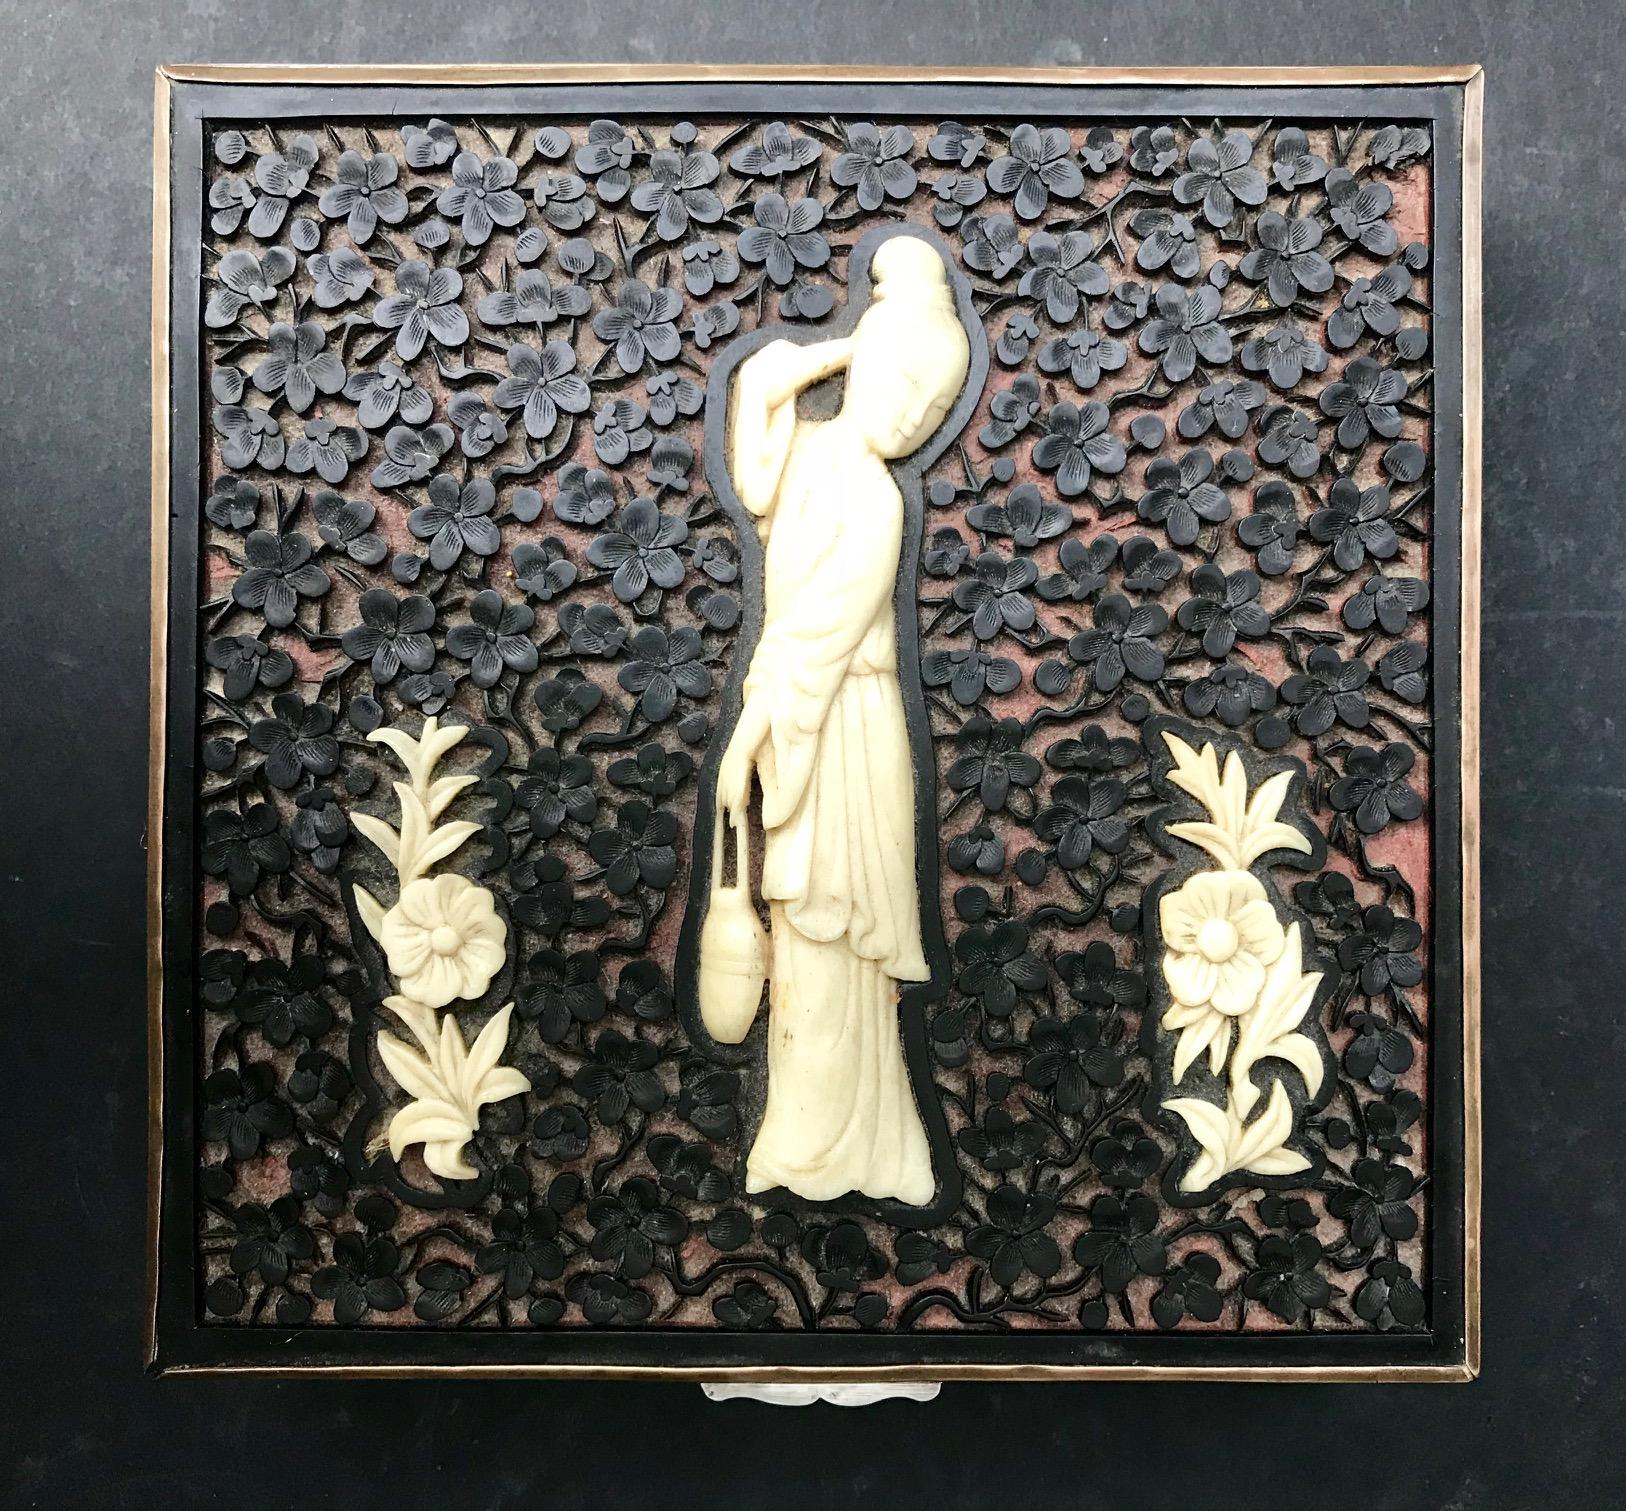 Diese seltene chinesische Art-Déco-Dose ist aus einer Kupferlegierung gefertigt. Der Deckel ist mit handgeschnitztem schwarzem Zinnober verziert und mit einer fein geschnitzten Knochenfigur und Blumen verziert. Alle vier Seiten sind mühsam mit